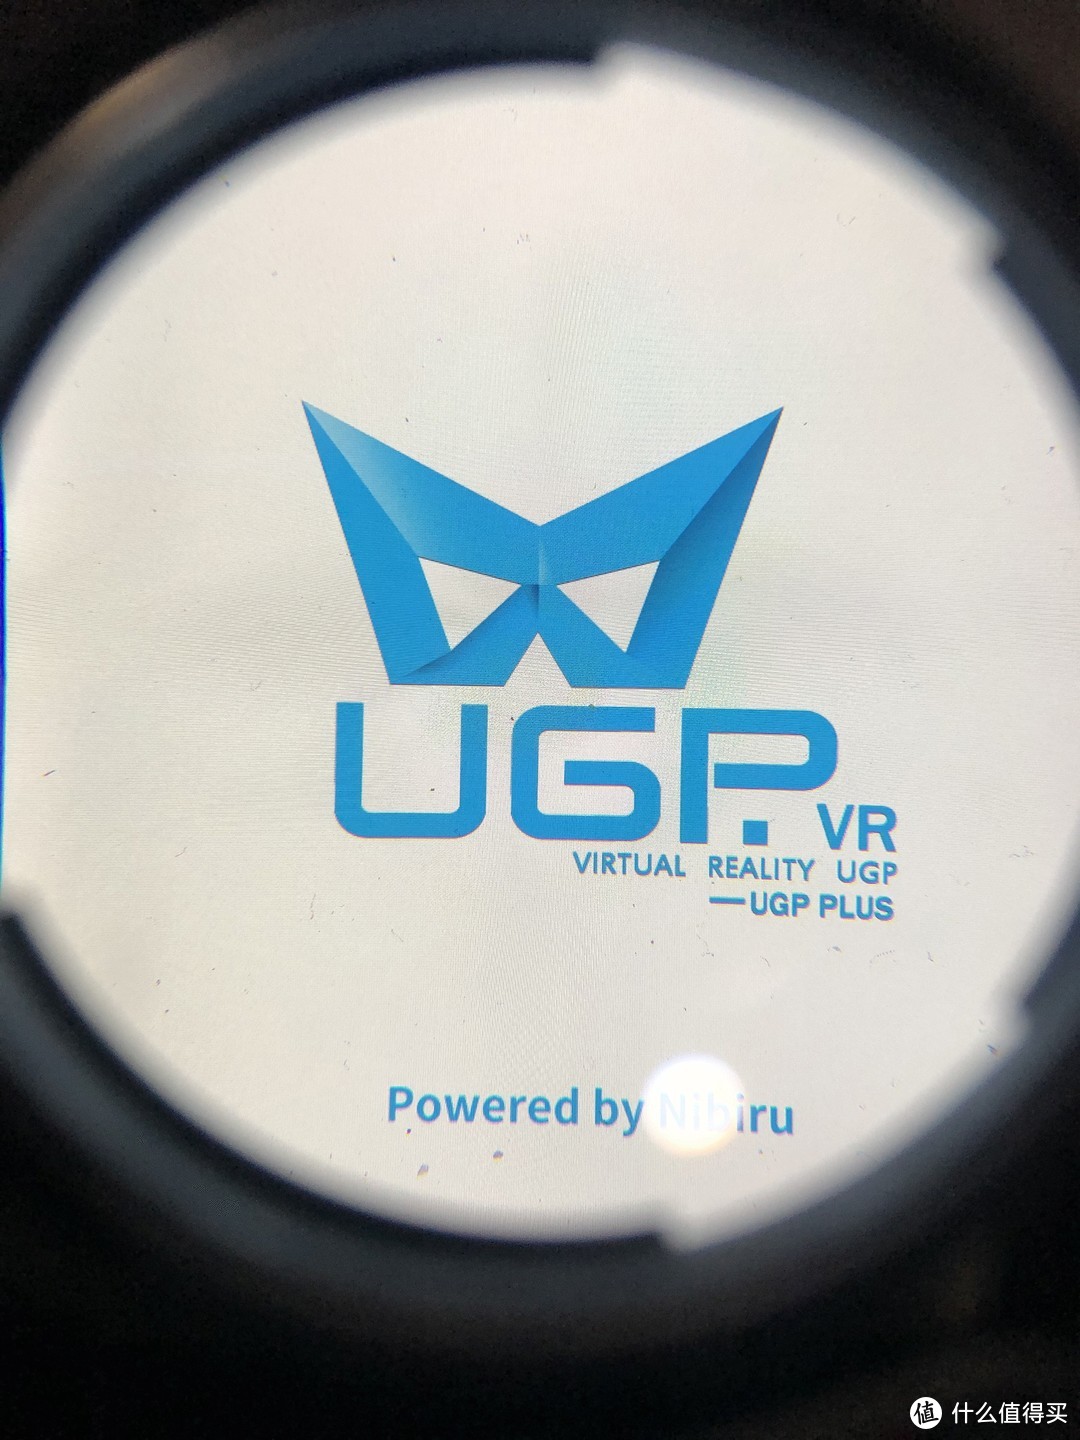 售价799，二手150元包邮捡到的UGP“高清”入门VR一体机究竟香不香